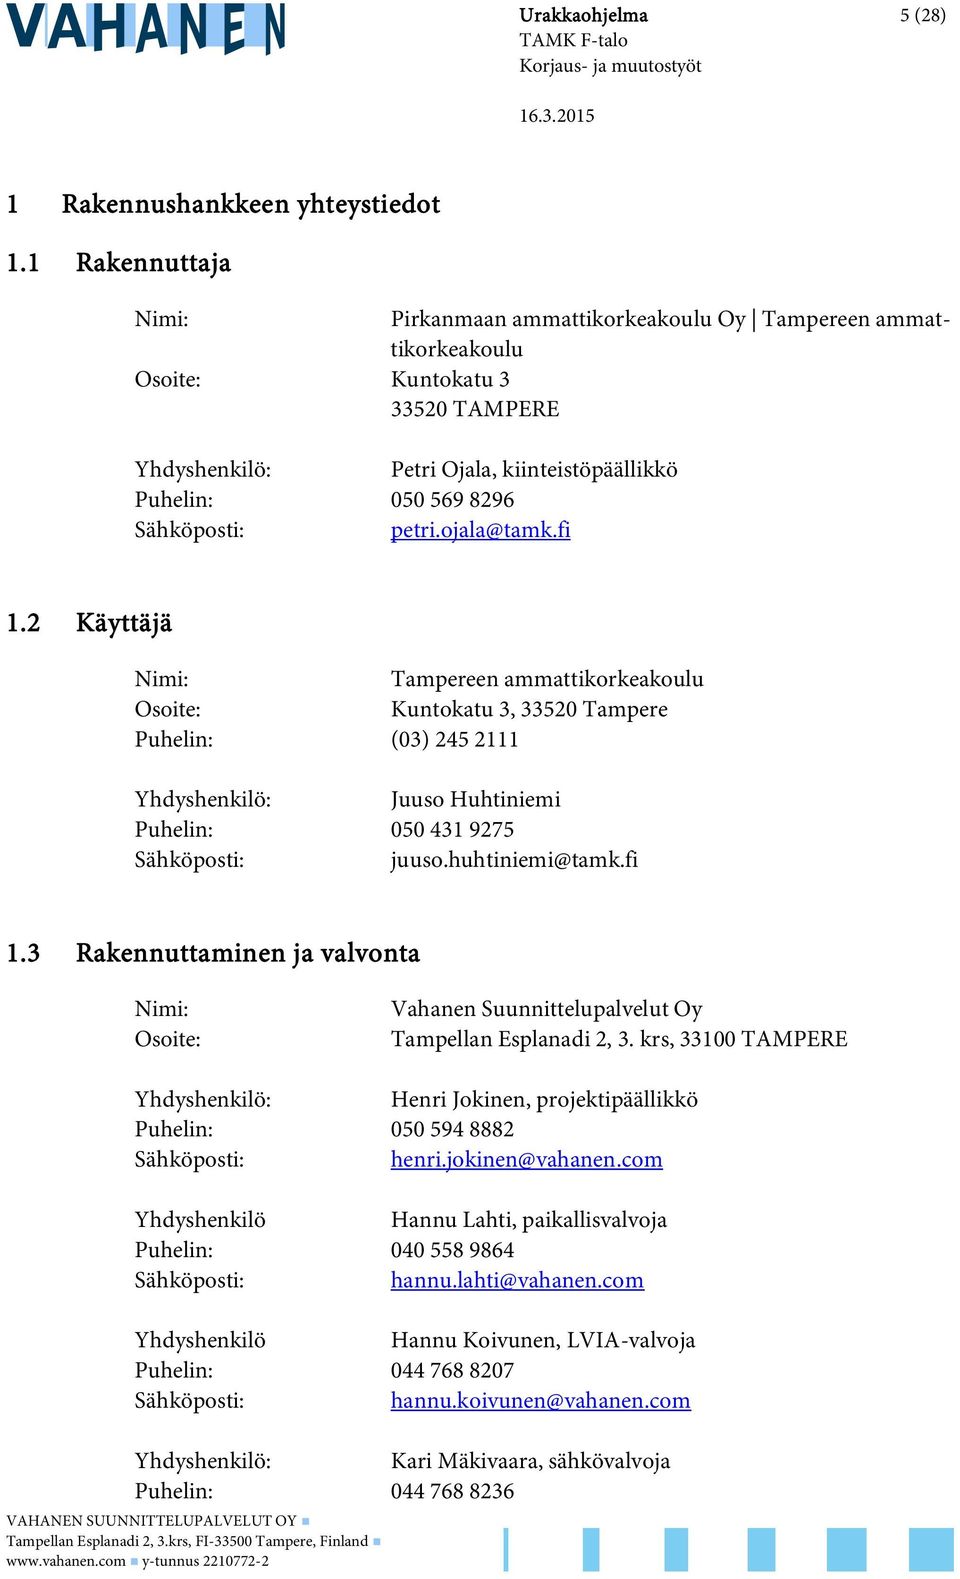 petri.ojala@tamk.fi 1.2 Käyttäjä Nimi: Tampereen ammattikorkeakoulu Osoite: Kuntokatu 3, 33520 Tampere Puhelin: (03) 245 2111 Yhdyshenkilö: Juuso Huhtiniemi Puhelin: 050 431 9275 Sähköposti: juuso.